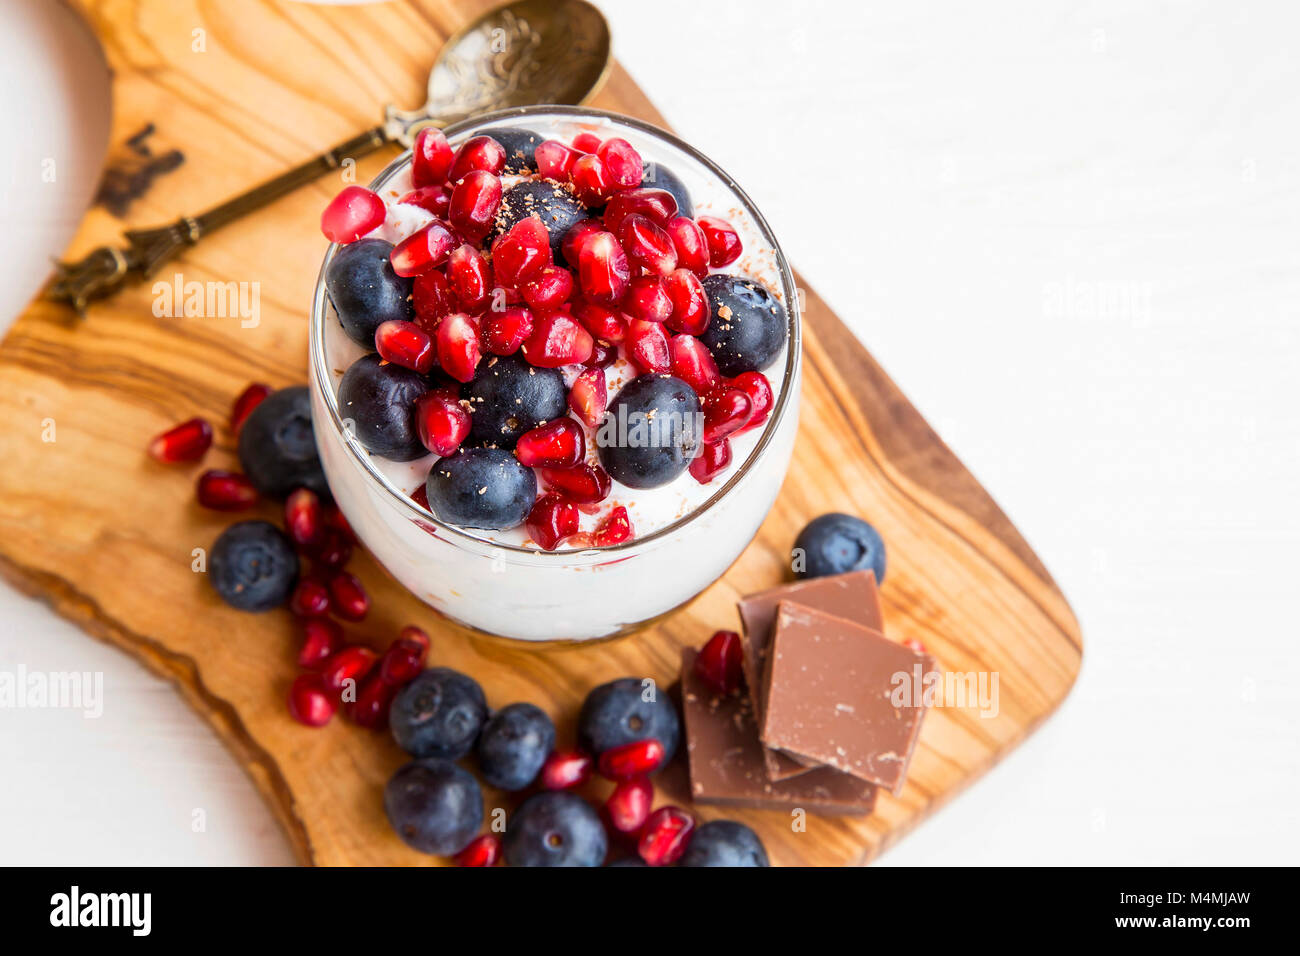 Tiramisu in ein Glas mit mascarponecreme, Blaubeeren und Granatapfel Obst,  süße Tasse Dessert auf Holzbrett Stockfotografie - Alamy